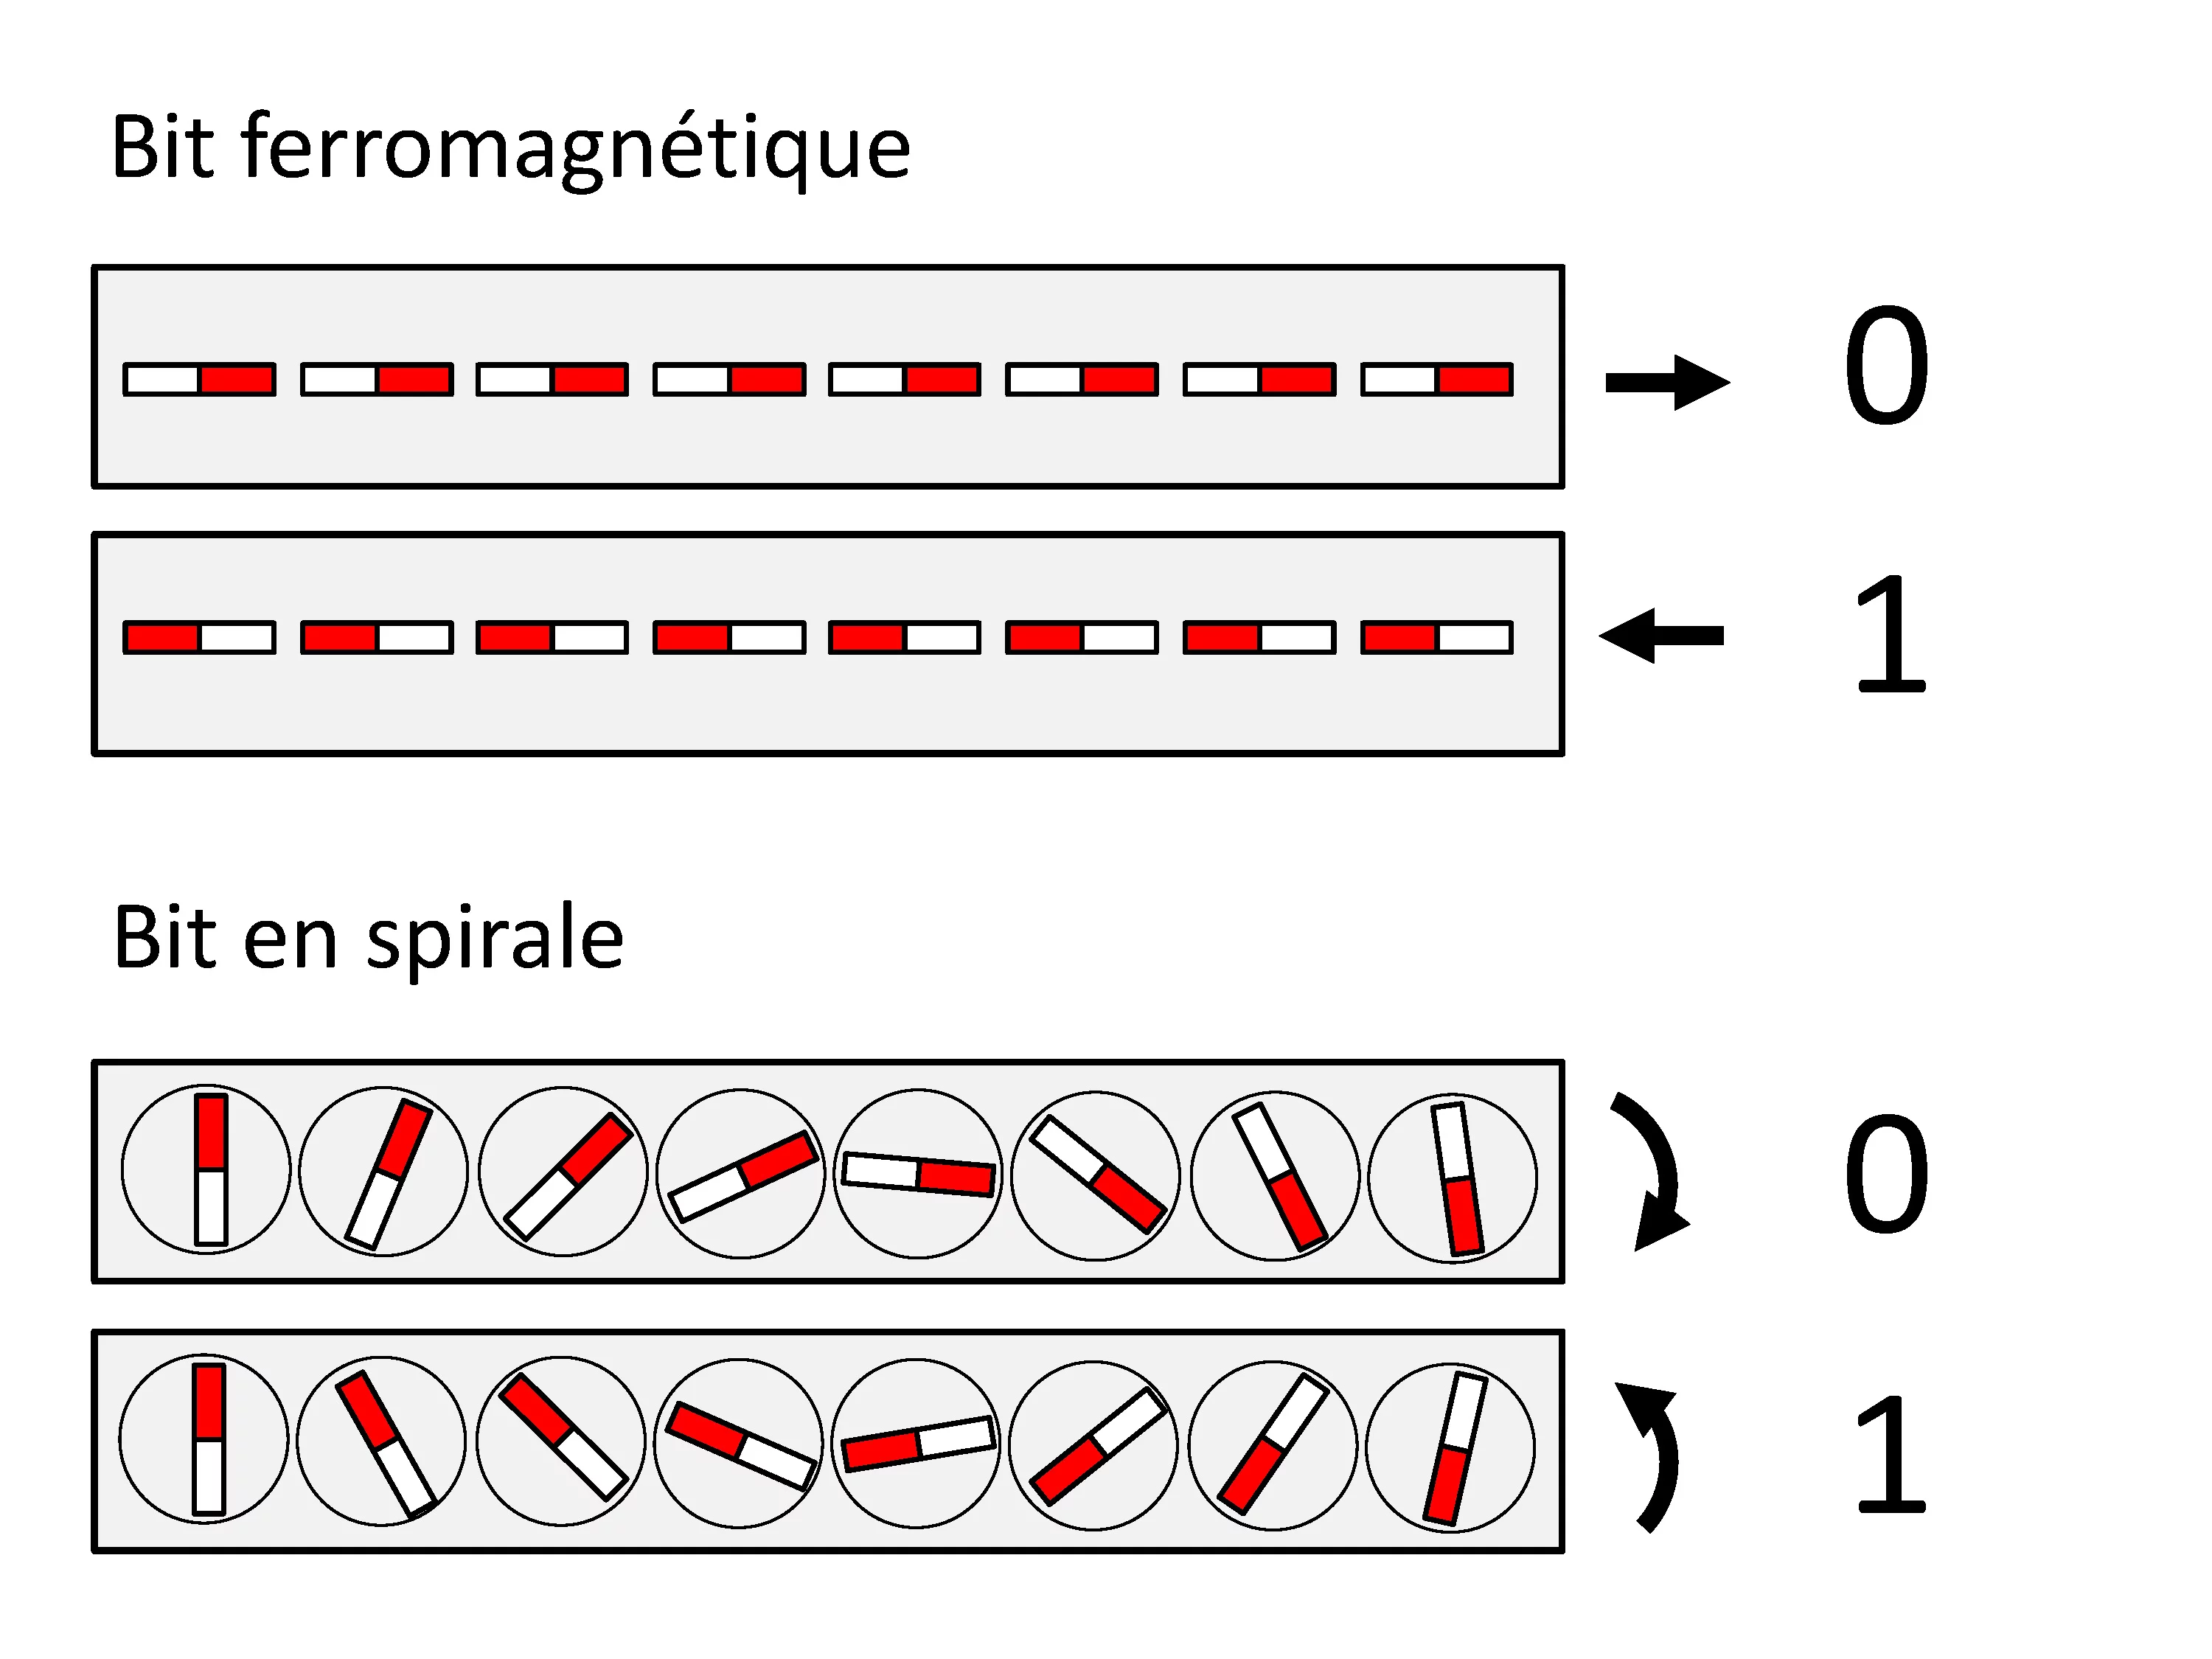 Les spirales peuvent stocker les informations. Dans la plupart des mémoires informatiques actuelles, les valeurs 0/1 sont représentées par l’orientation gauche/droite de petits aimants. Dans une mémoire magnétoélectrique du futur, en revanche, ces mêmes aimants élémentaires forment des structures en spirales. Et là, les valeurs 0/1 sont représentées par le sens de rotation gauche/droit des spirales. (Source: Institut Paul Scherrer/Marisa Medarde)